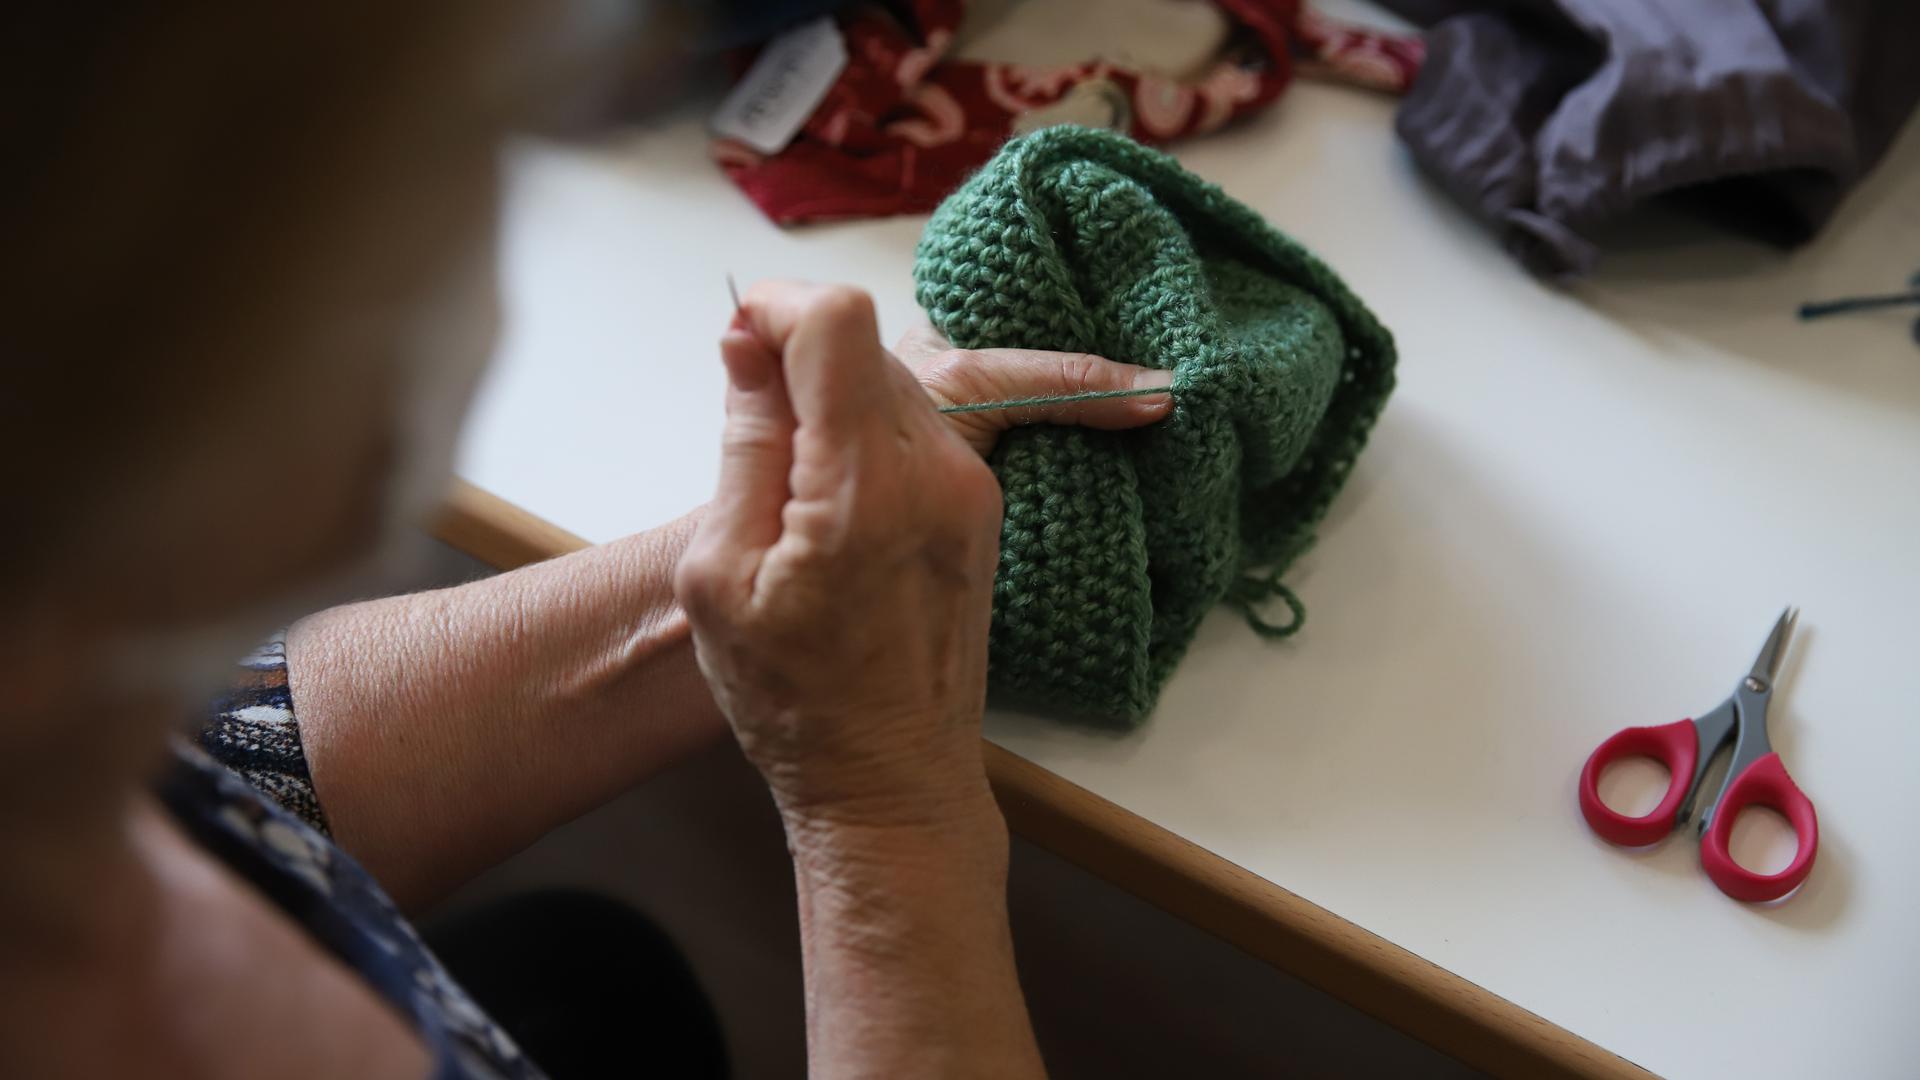 Tout le monde peut apprendre à tricoter ici : des tricoteuses expérimentées montrent comment faire.